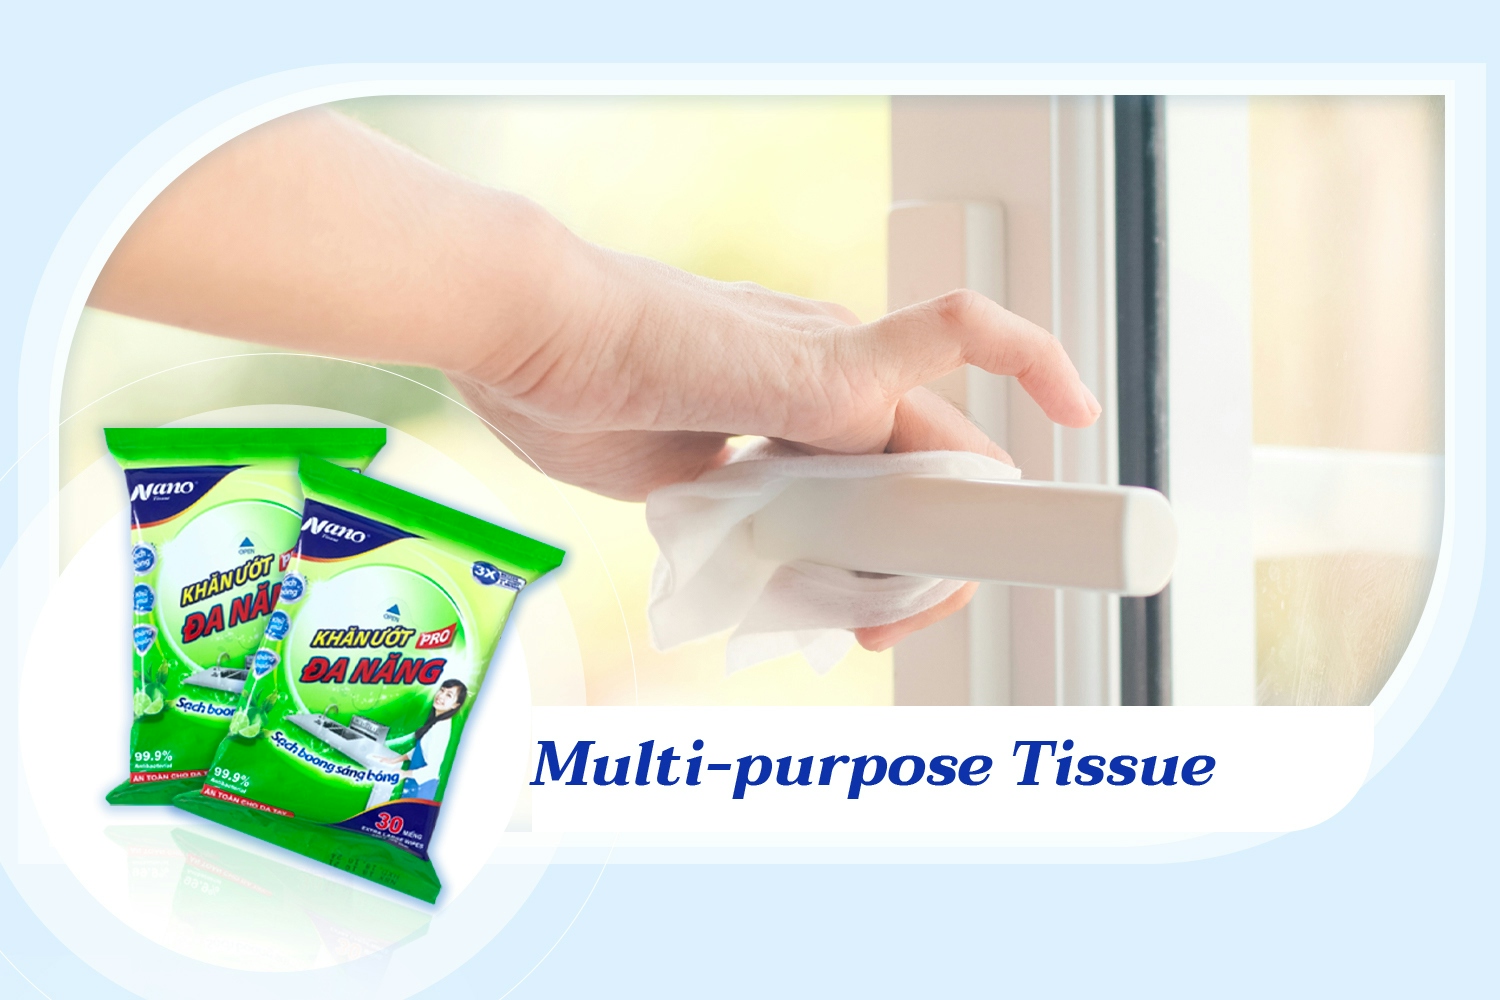 Multi-purpose tissue